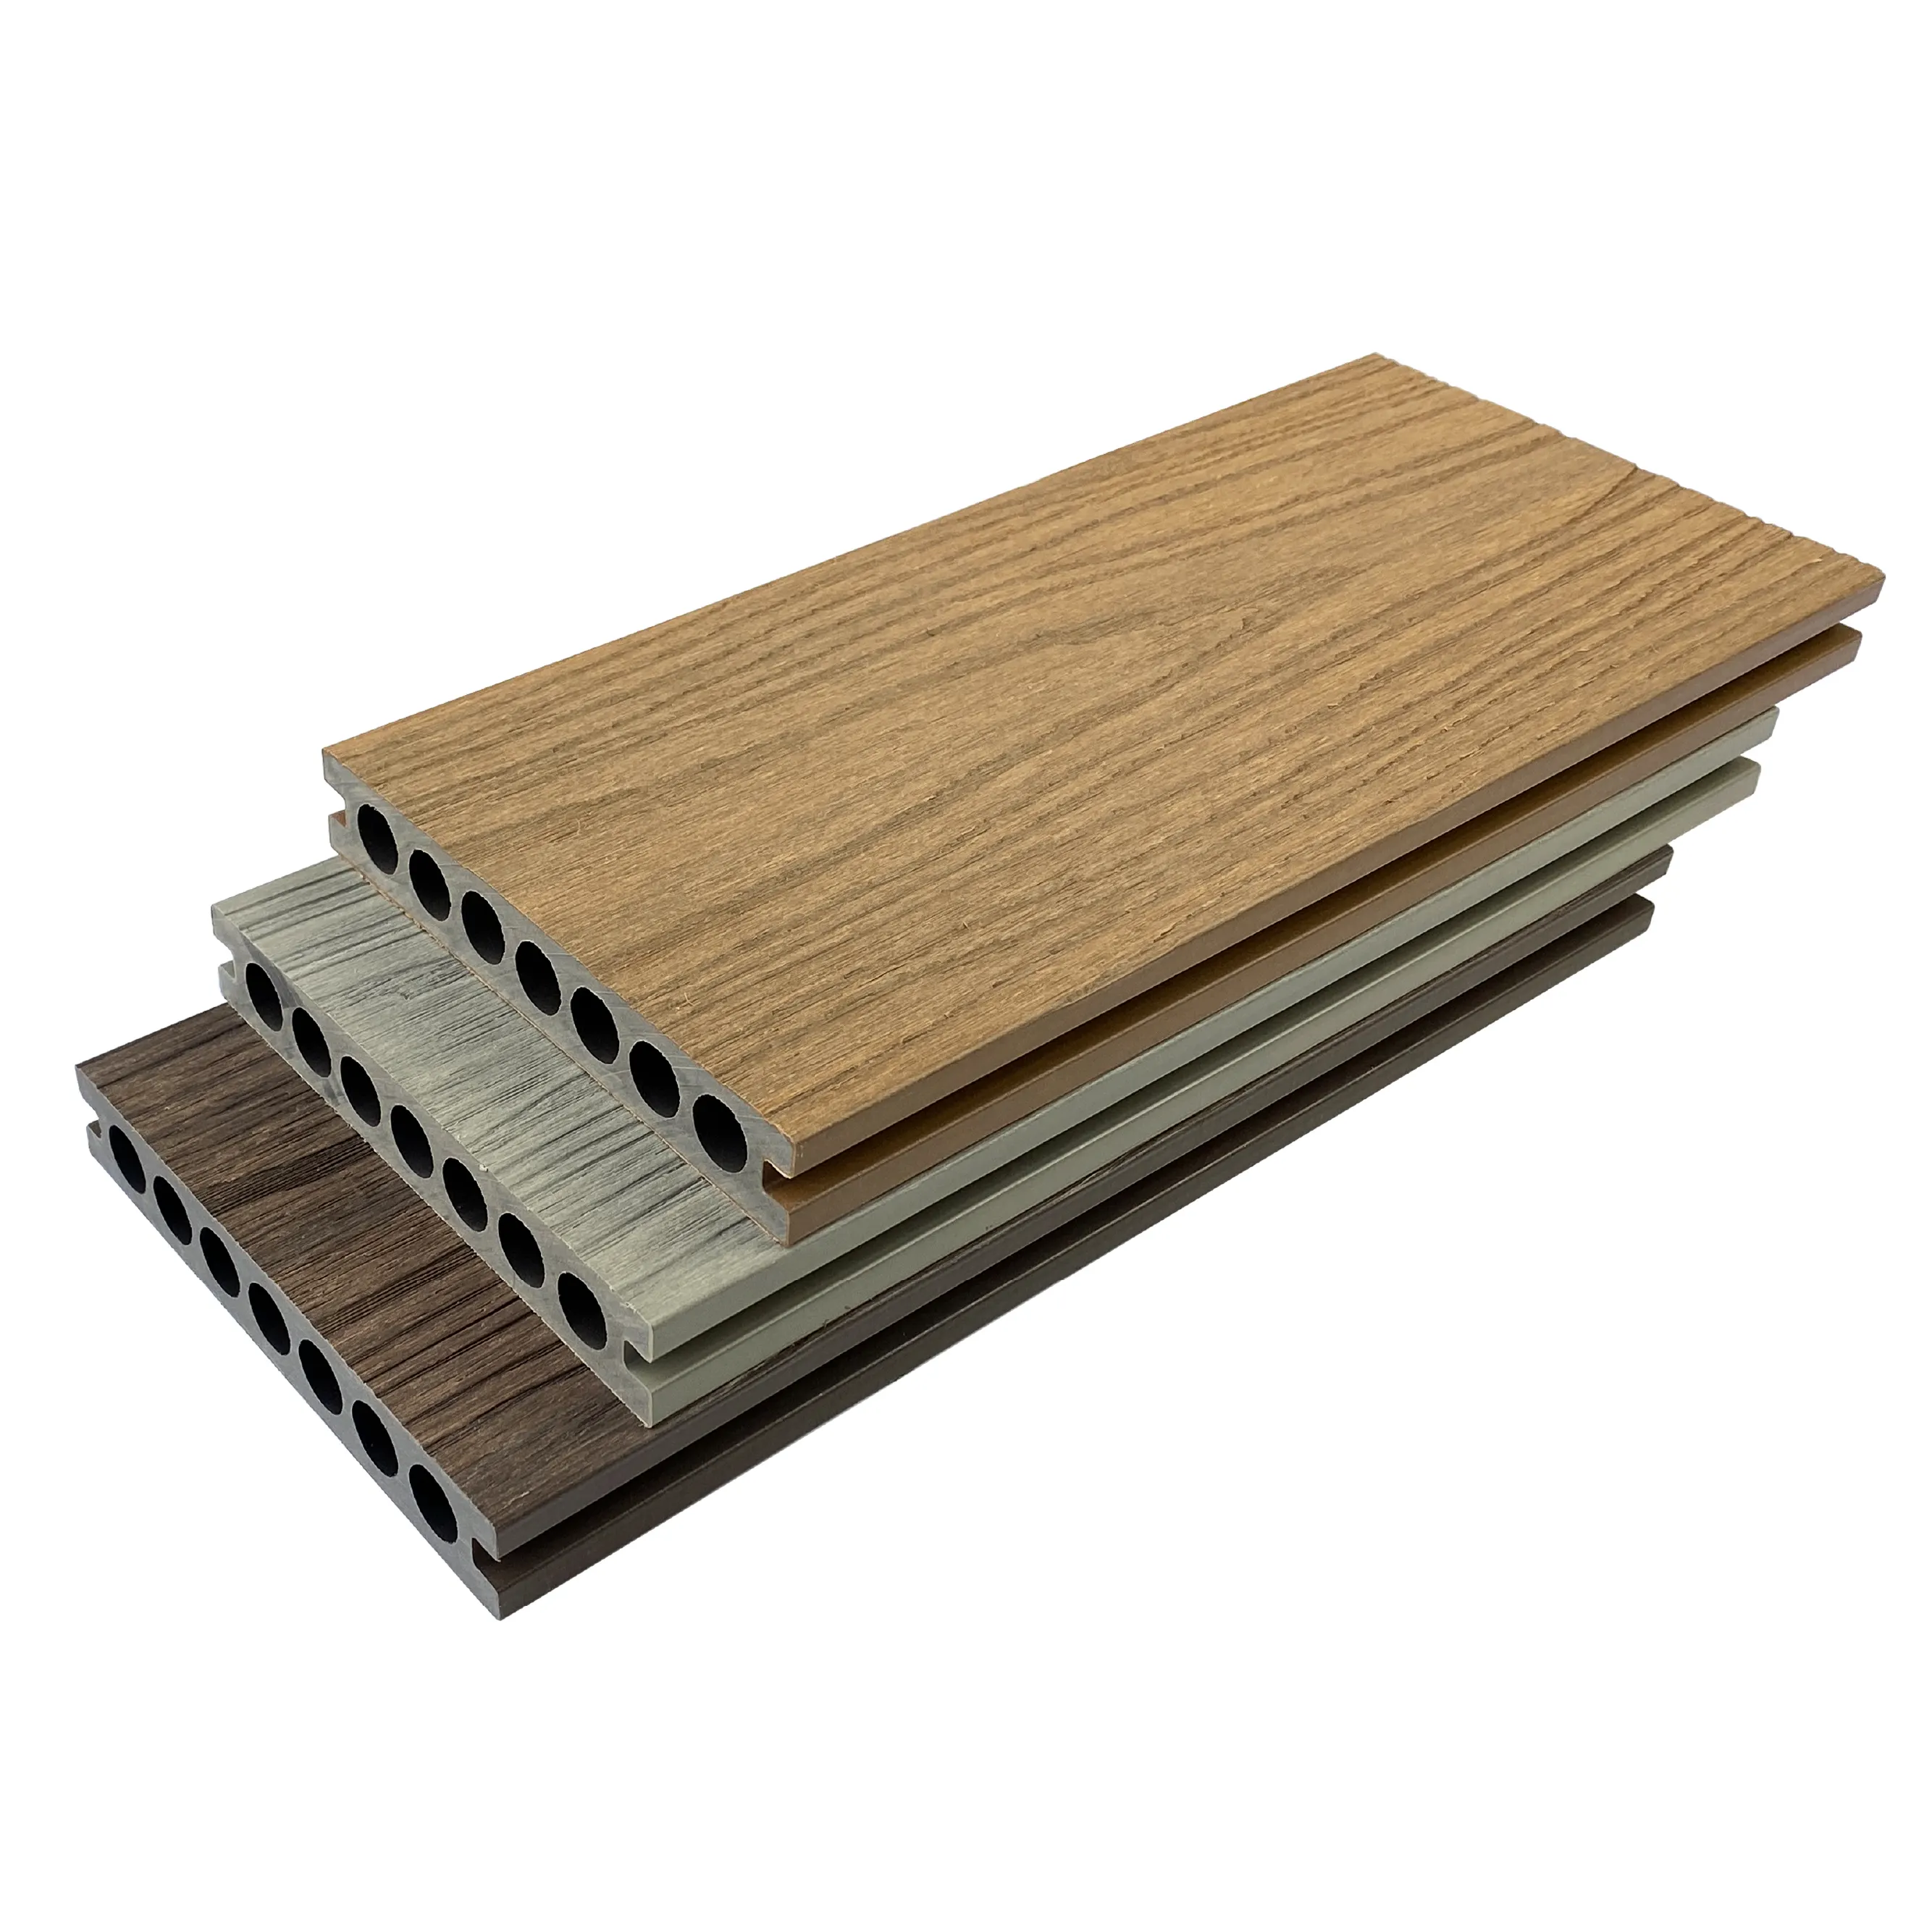 RUCCA No Gap Deck Wpc Außen boden 139*23mm Holz Kunststoff Verbund deck für Schwimmbad und Terrasse